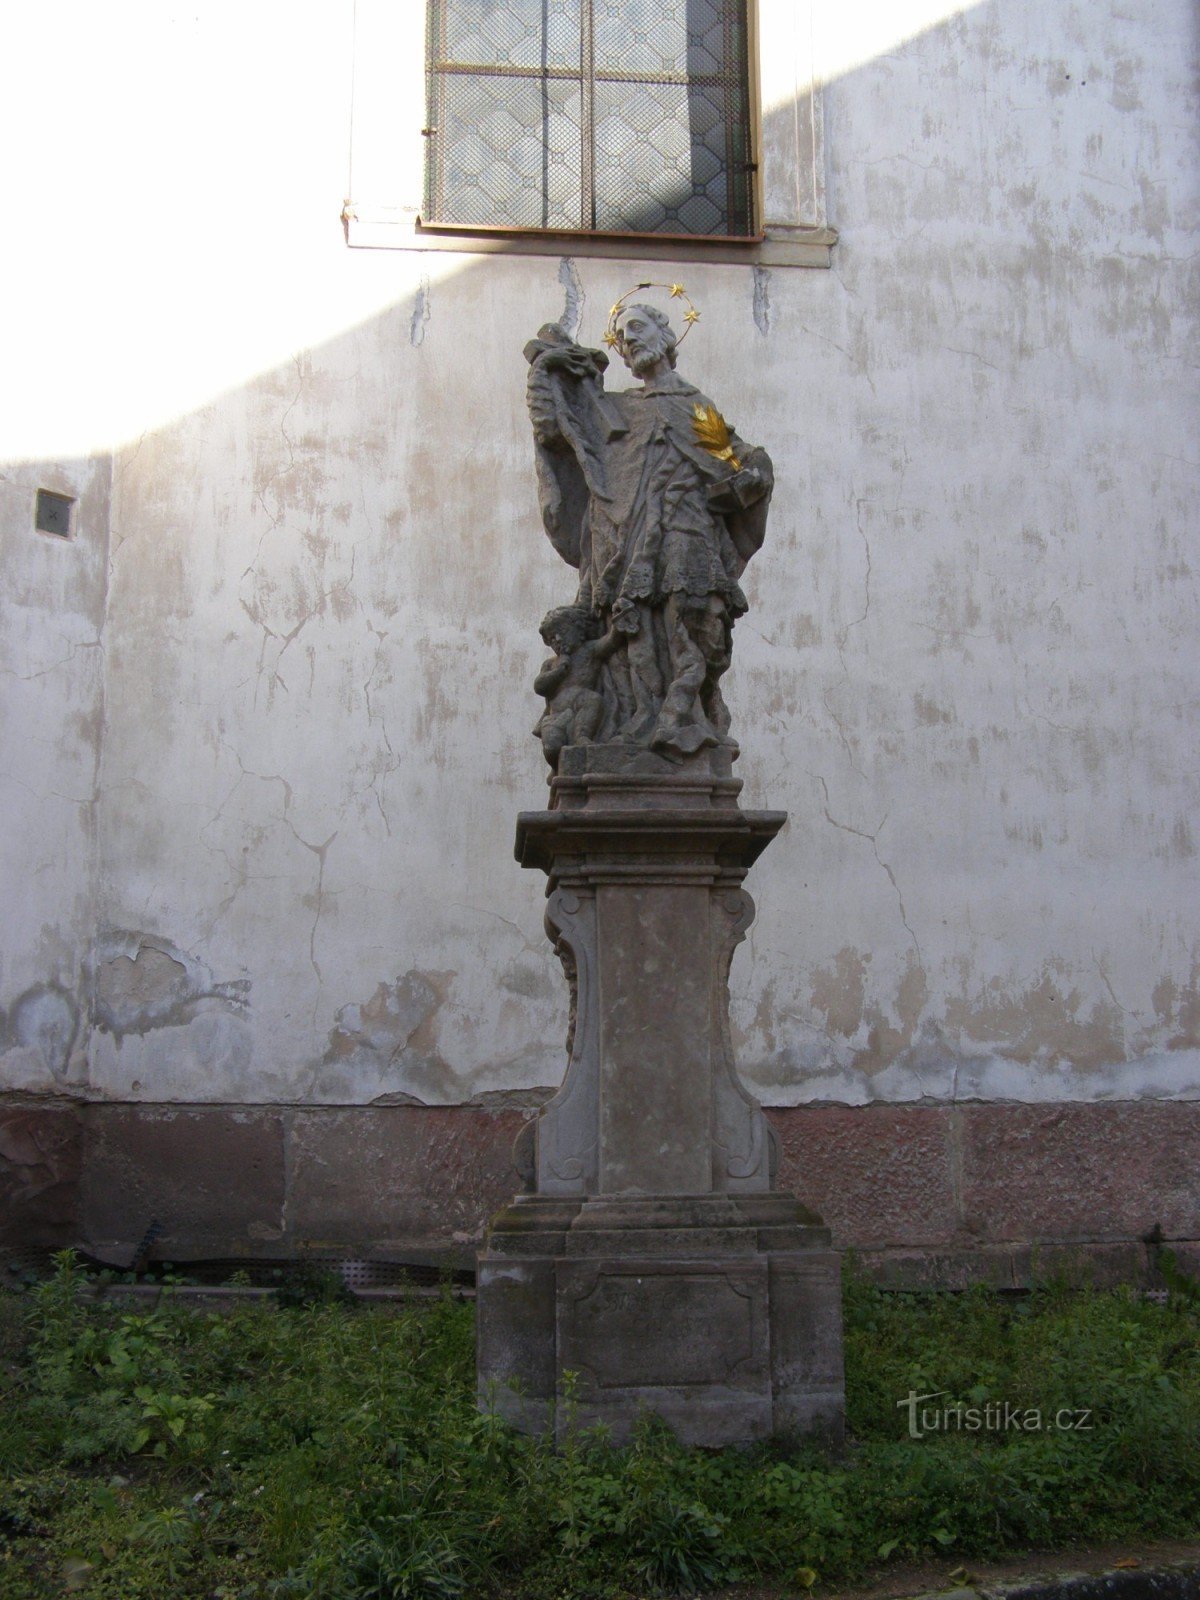 Lomnice nad Popelkou - nhà thờ St. Nicholas of Bari, tượng St. John of Nepomuck